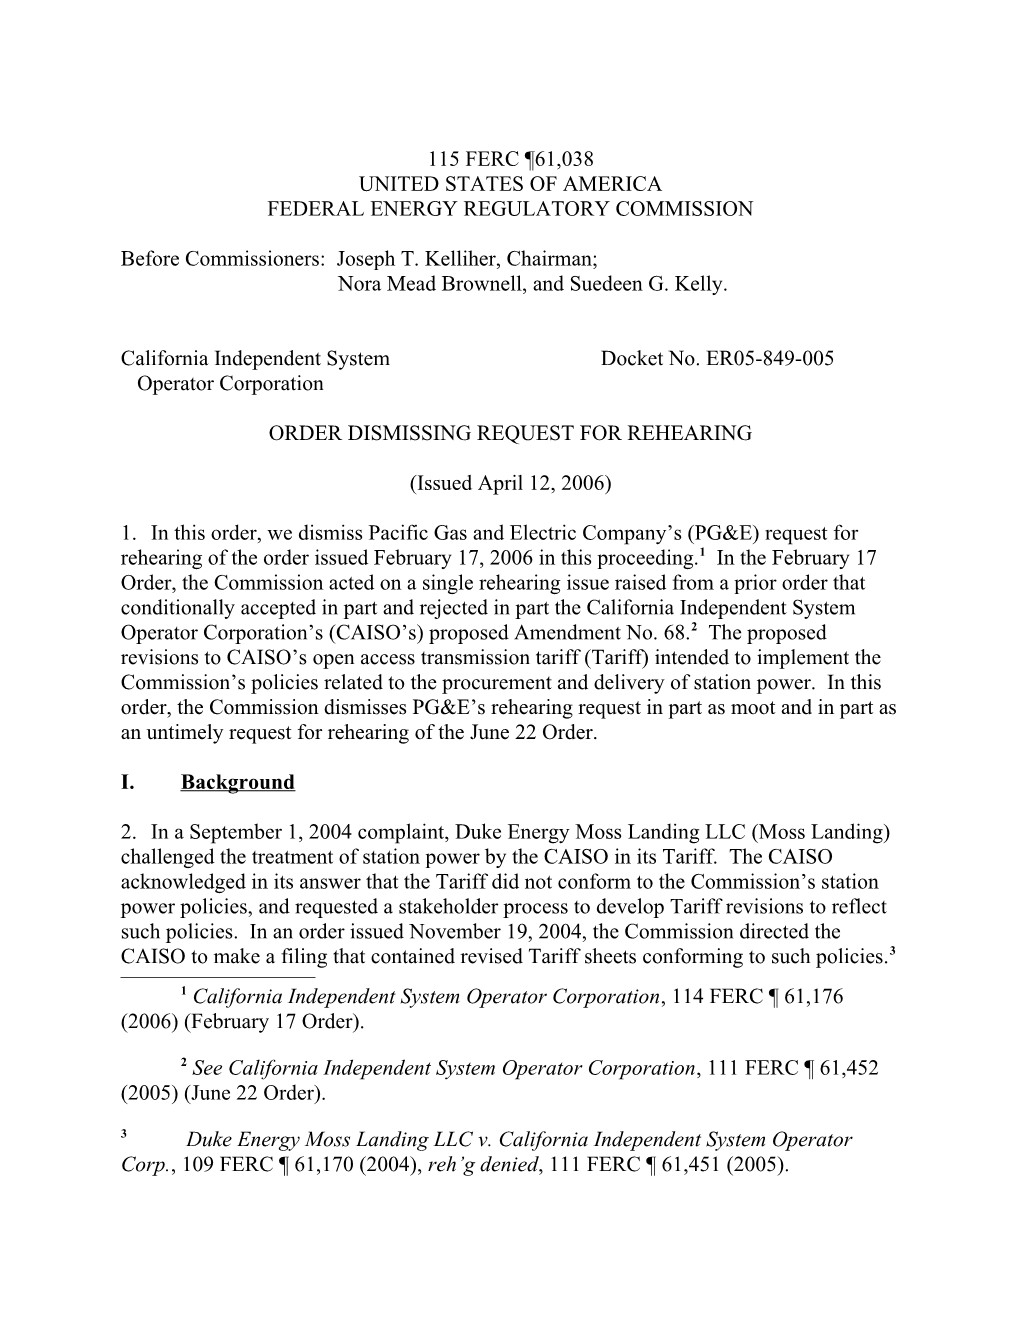 April 12, 2006 FERC Order Dismissing Request for Rehearing in Docket No. ER05-849-000 (Station